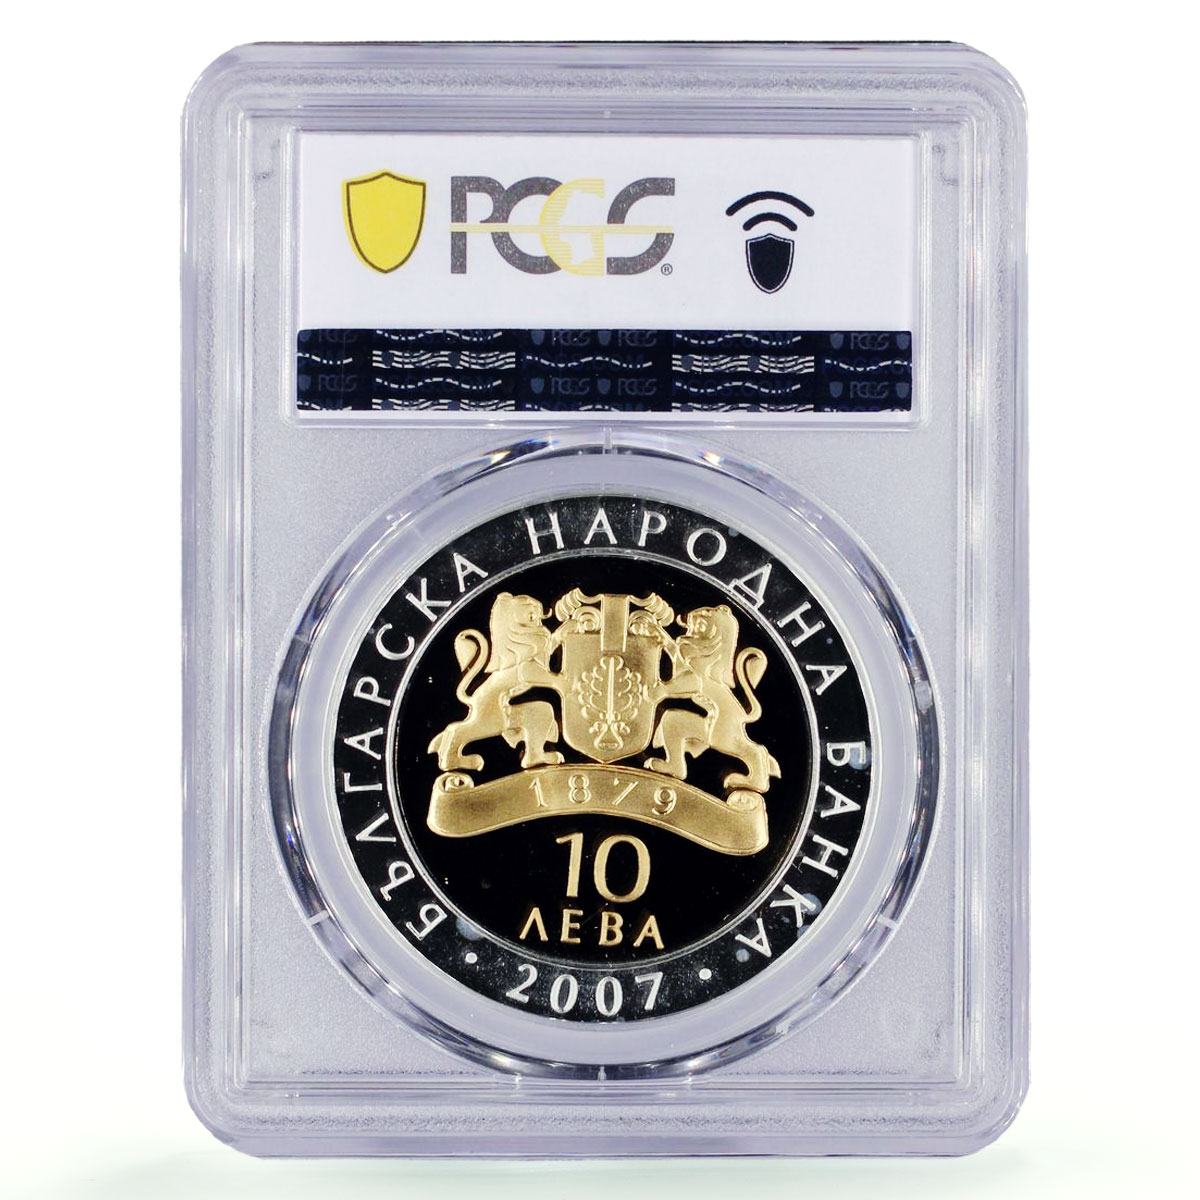 Bulgaria 10 leva Treasures Vazovo Pegasus Horse Gilt PR67 PCGS silver coin 2007